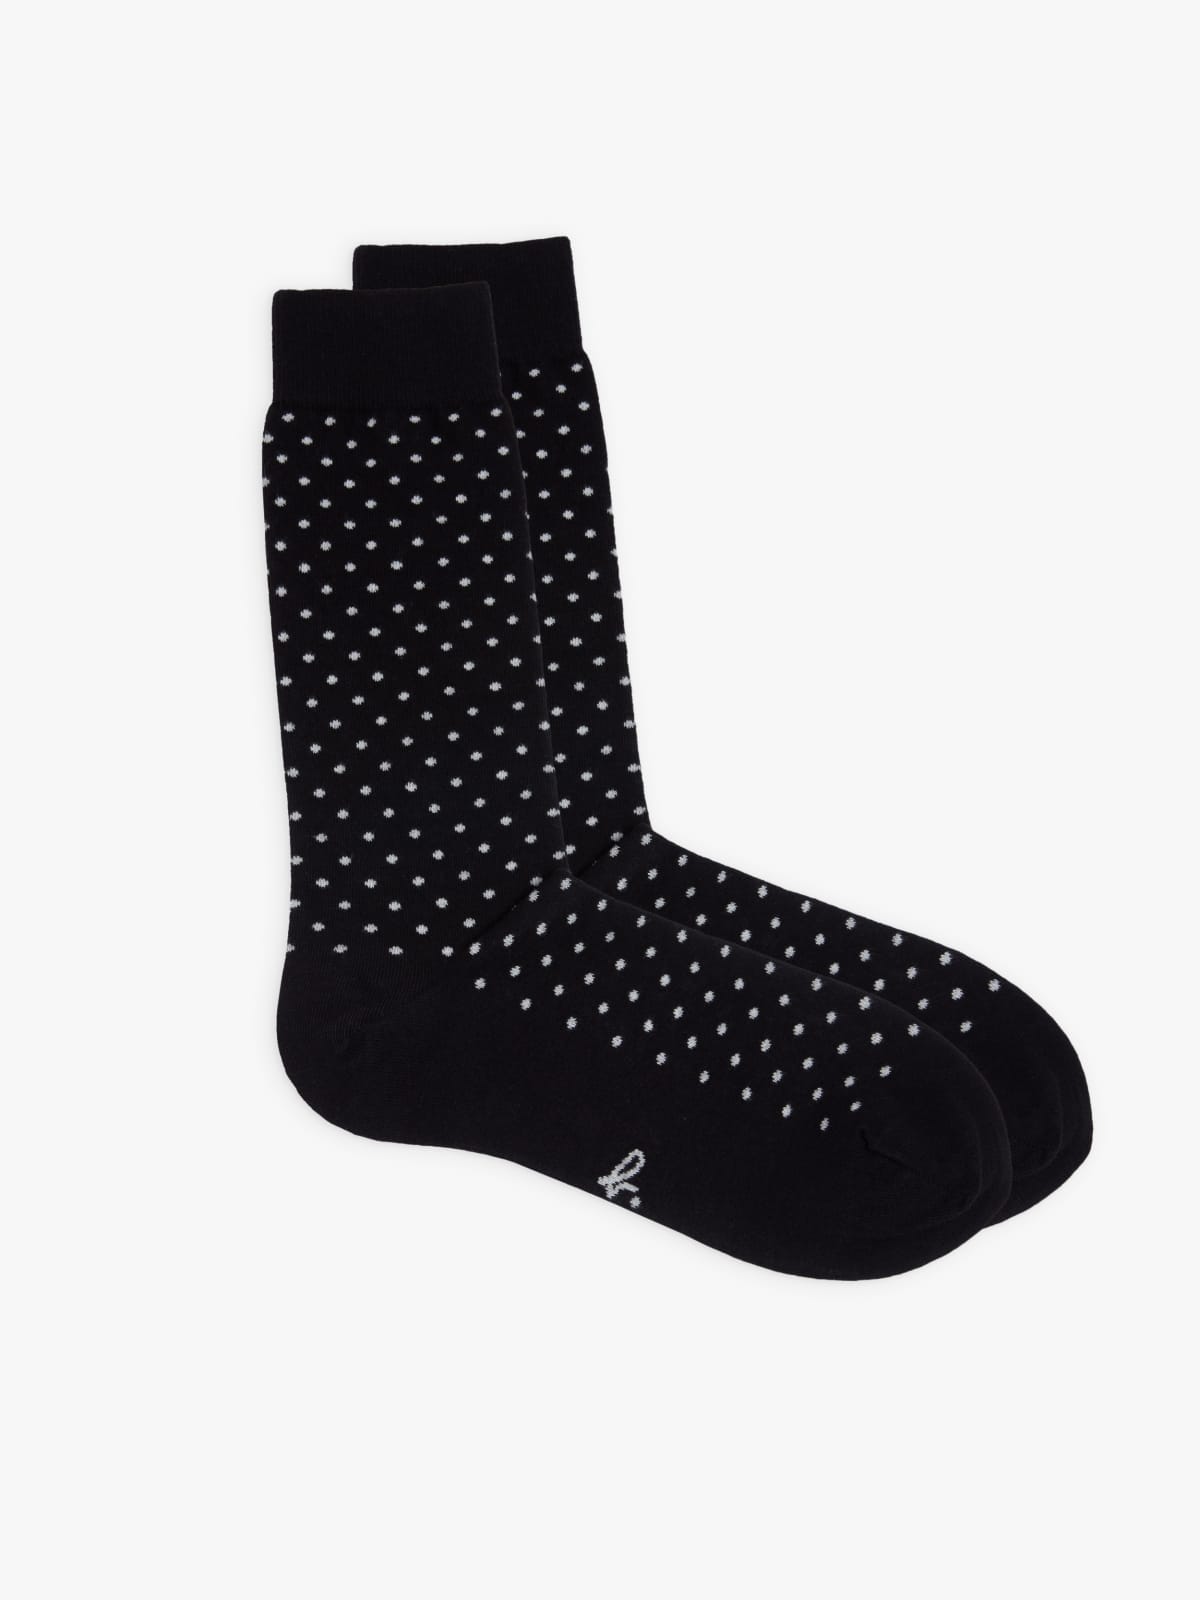 white polka dots socks